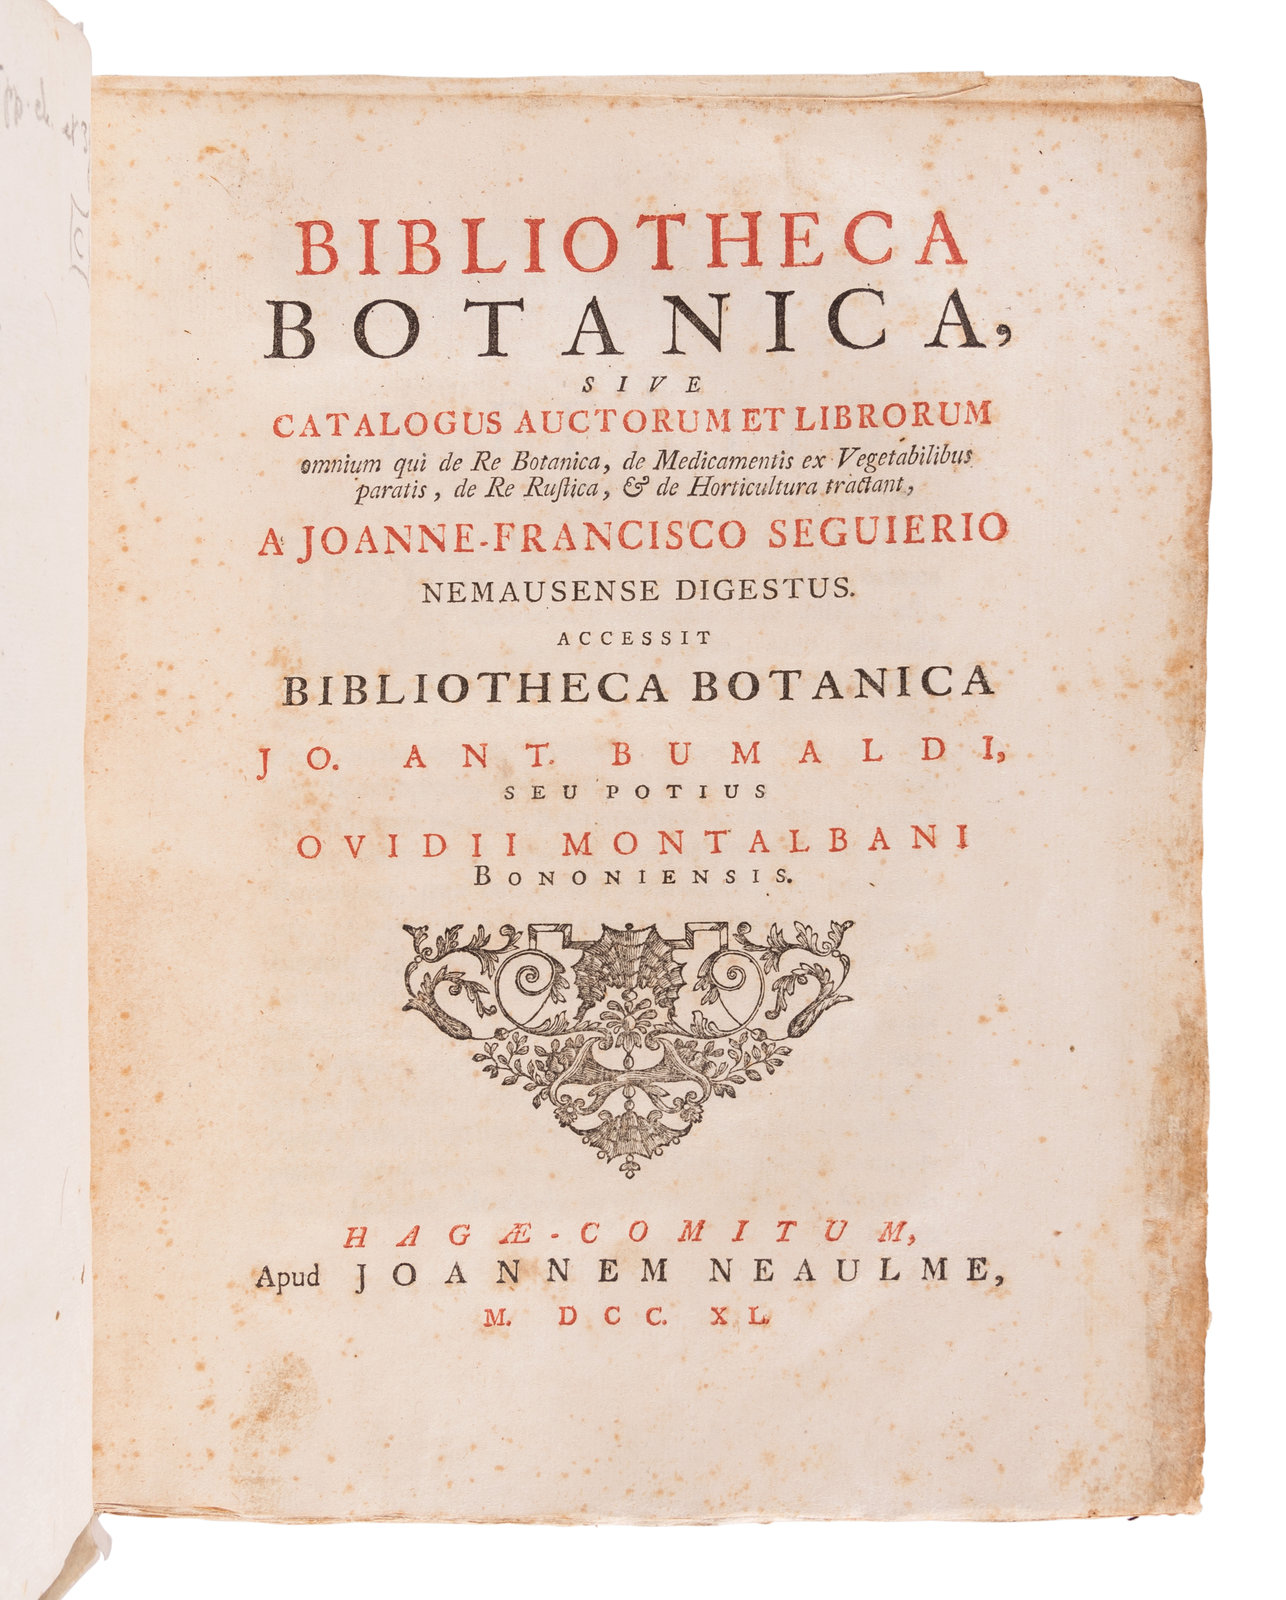 Assimileren pion Becks SÉGUIER, François (1703-1784). Bibliotheca Botanica sive catalogus auctorum  et librorum omnium qui de re botanica...tractant. The Hague: Jean Neaulme,  1740.